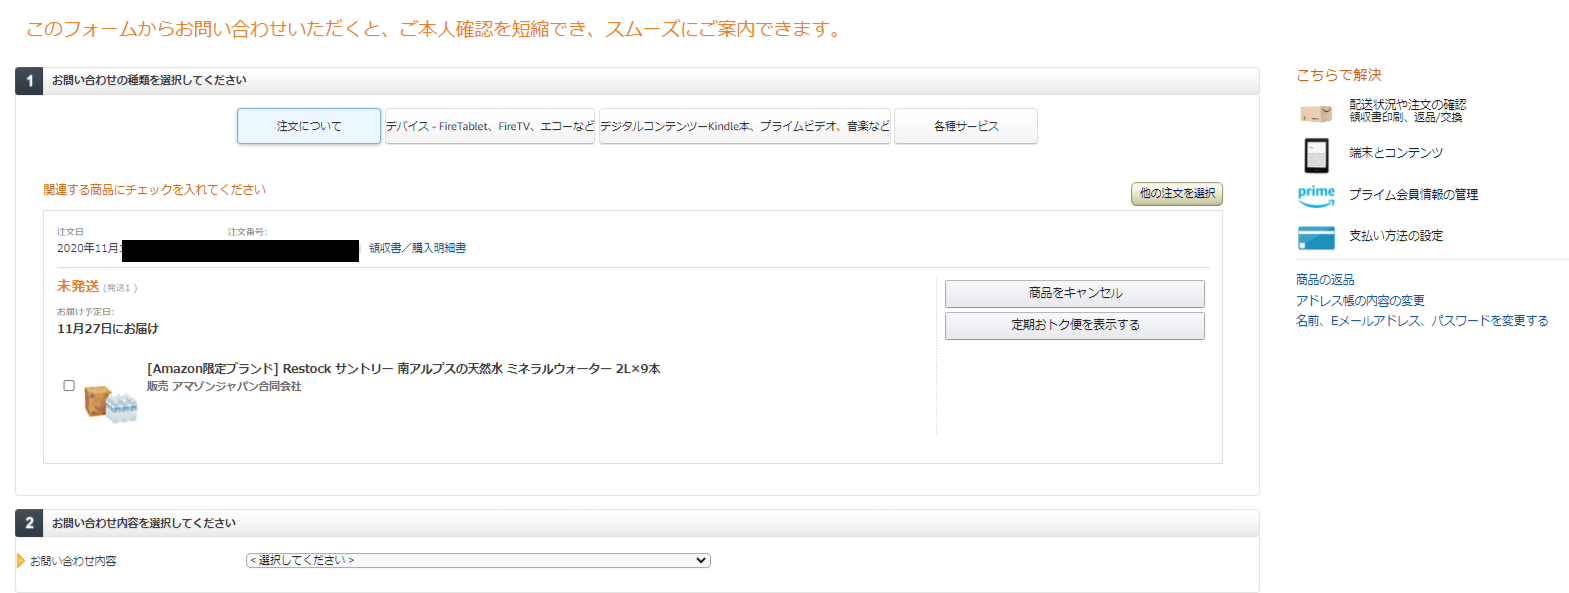 Amazon.co.jp - カスタマーサービスに連絡2